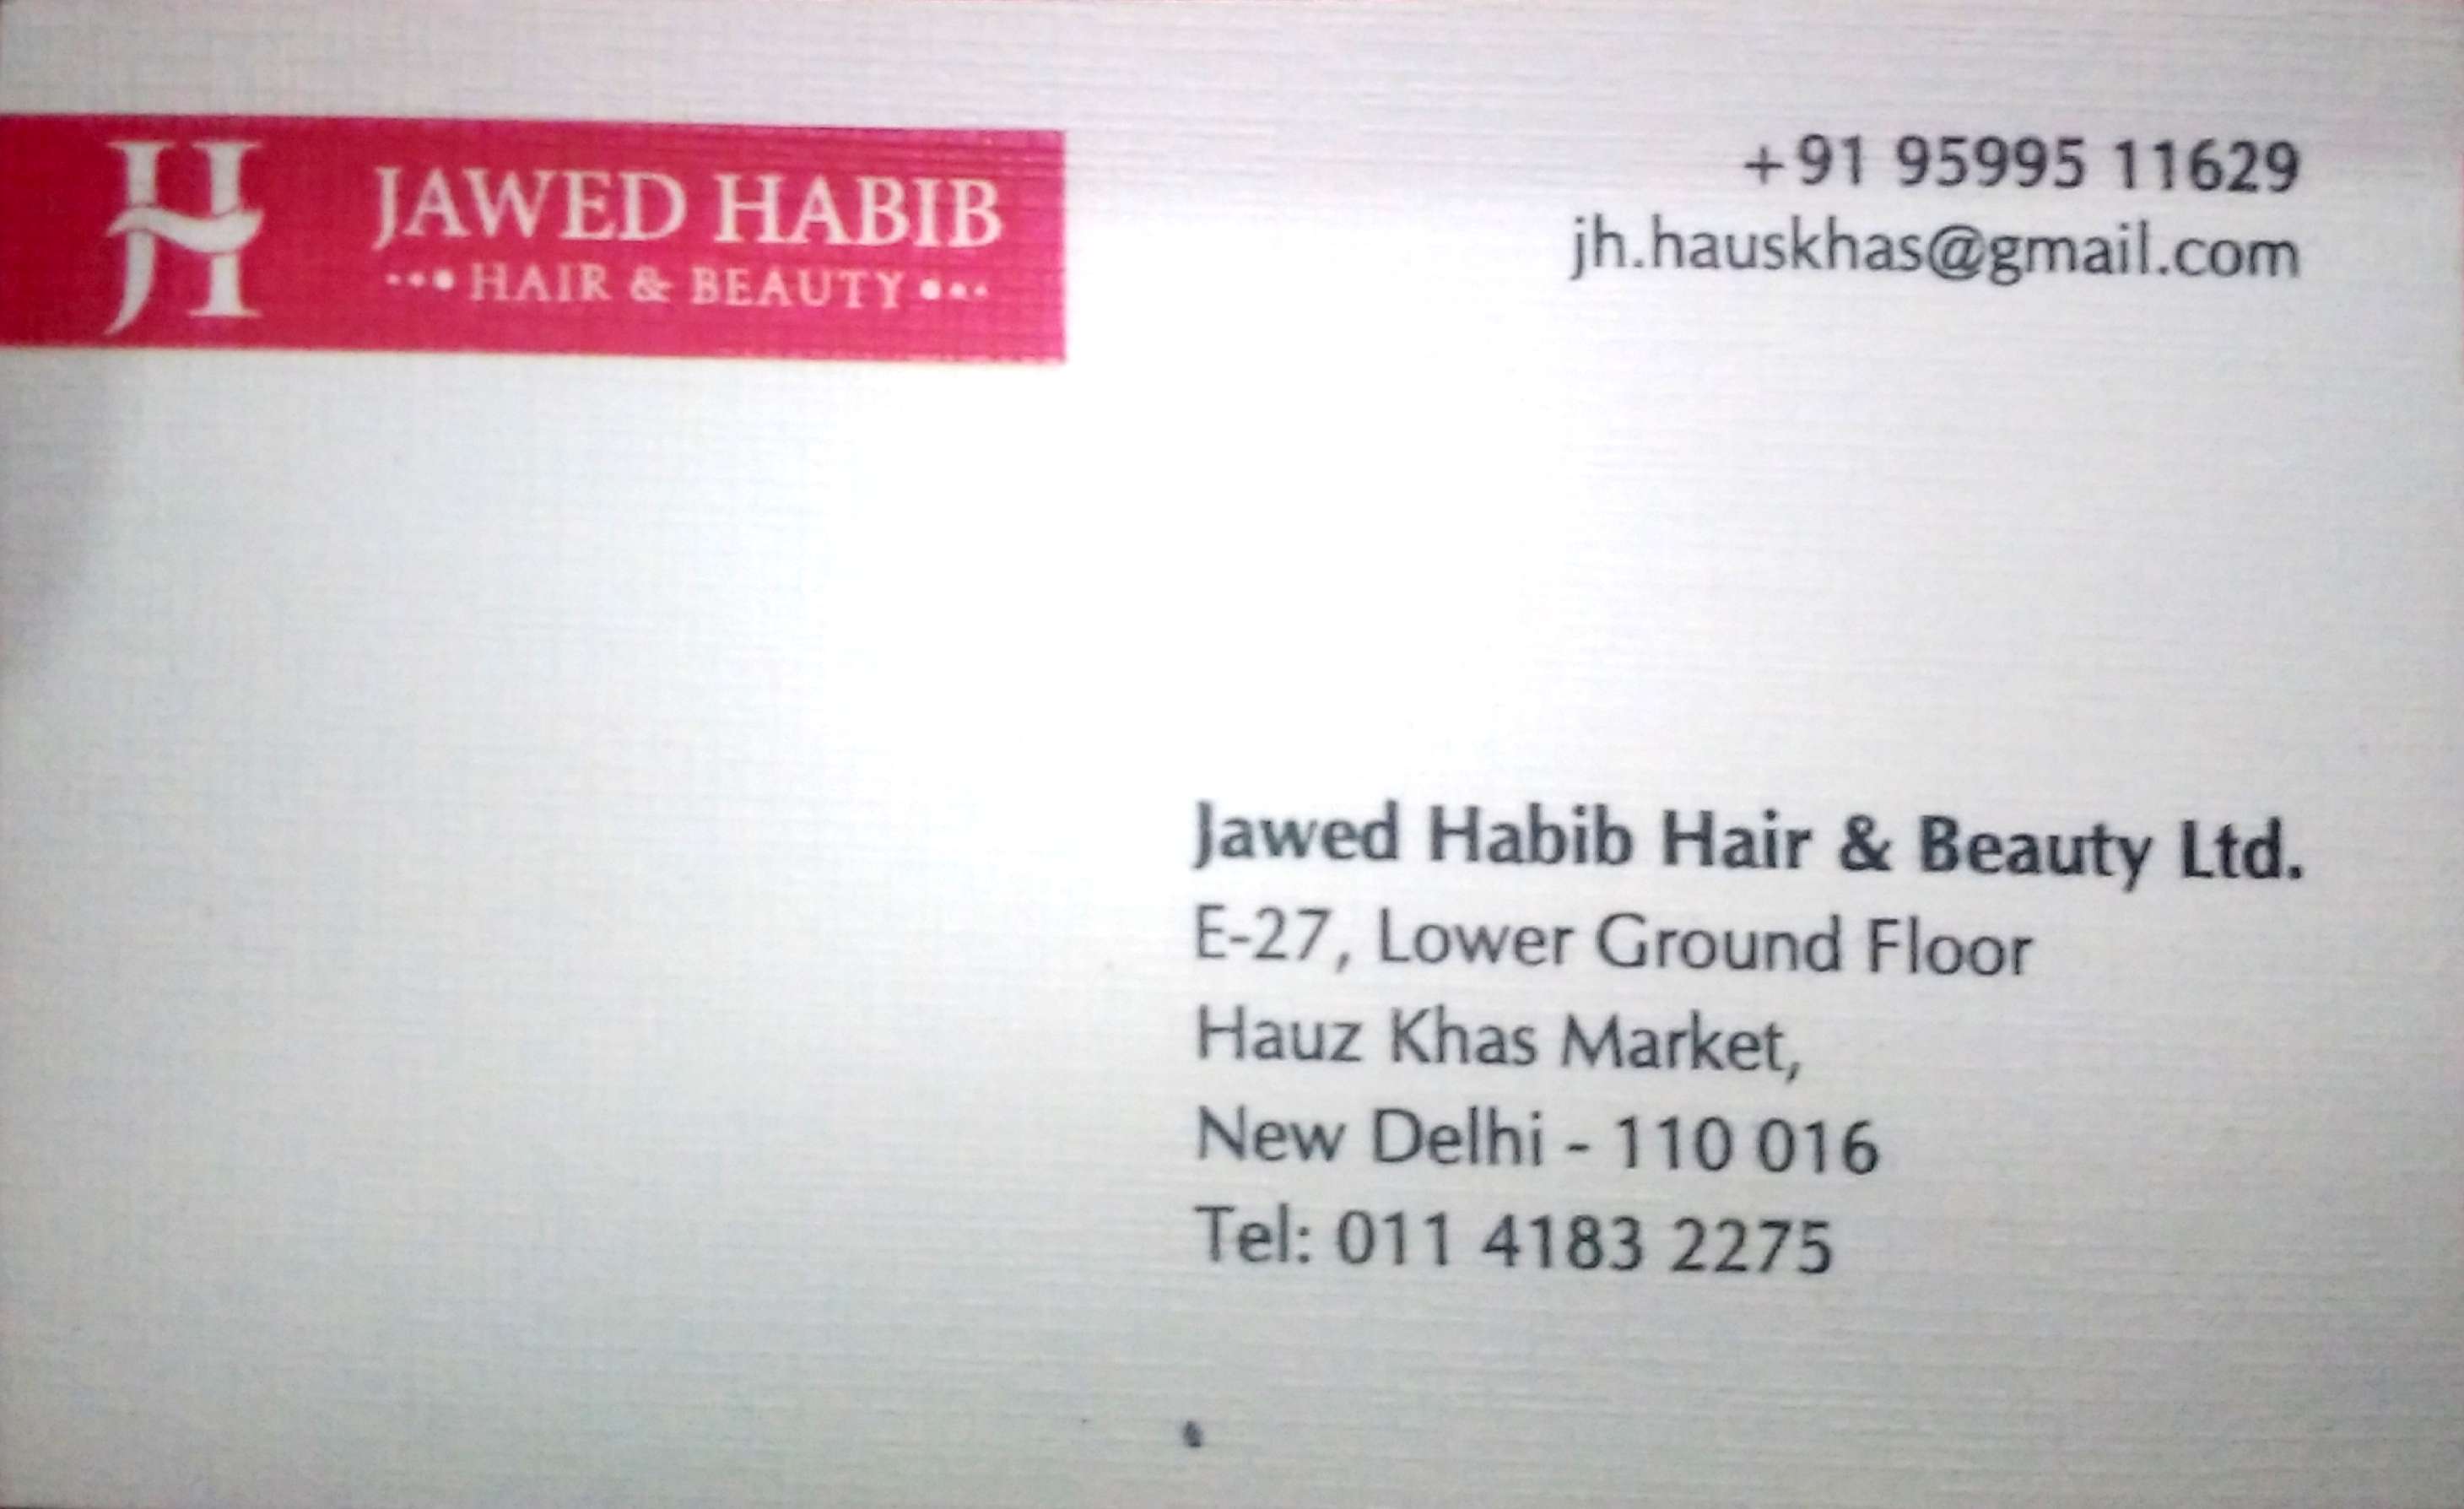 Jawed Habib Hair & Beauty Ltd. in Hauz Khas, Delhi-110016 | Sulekha Delhi